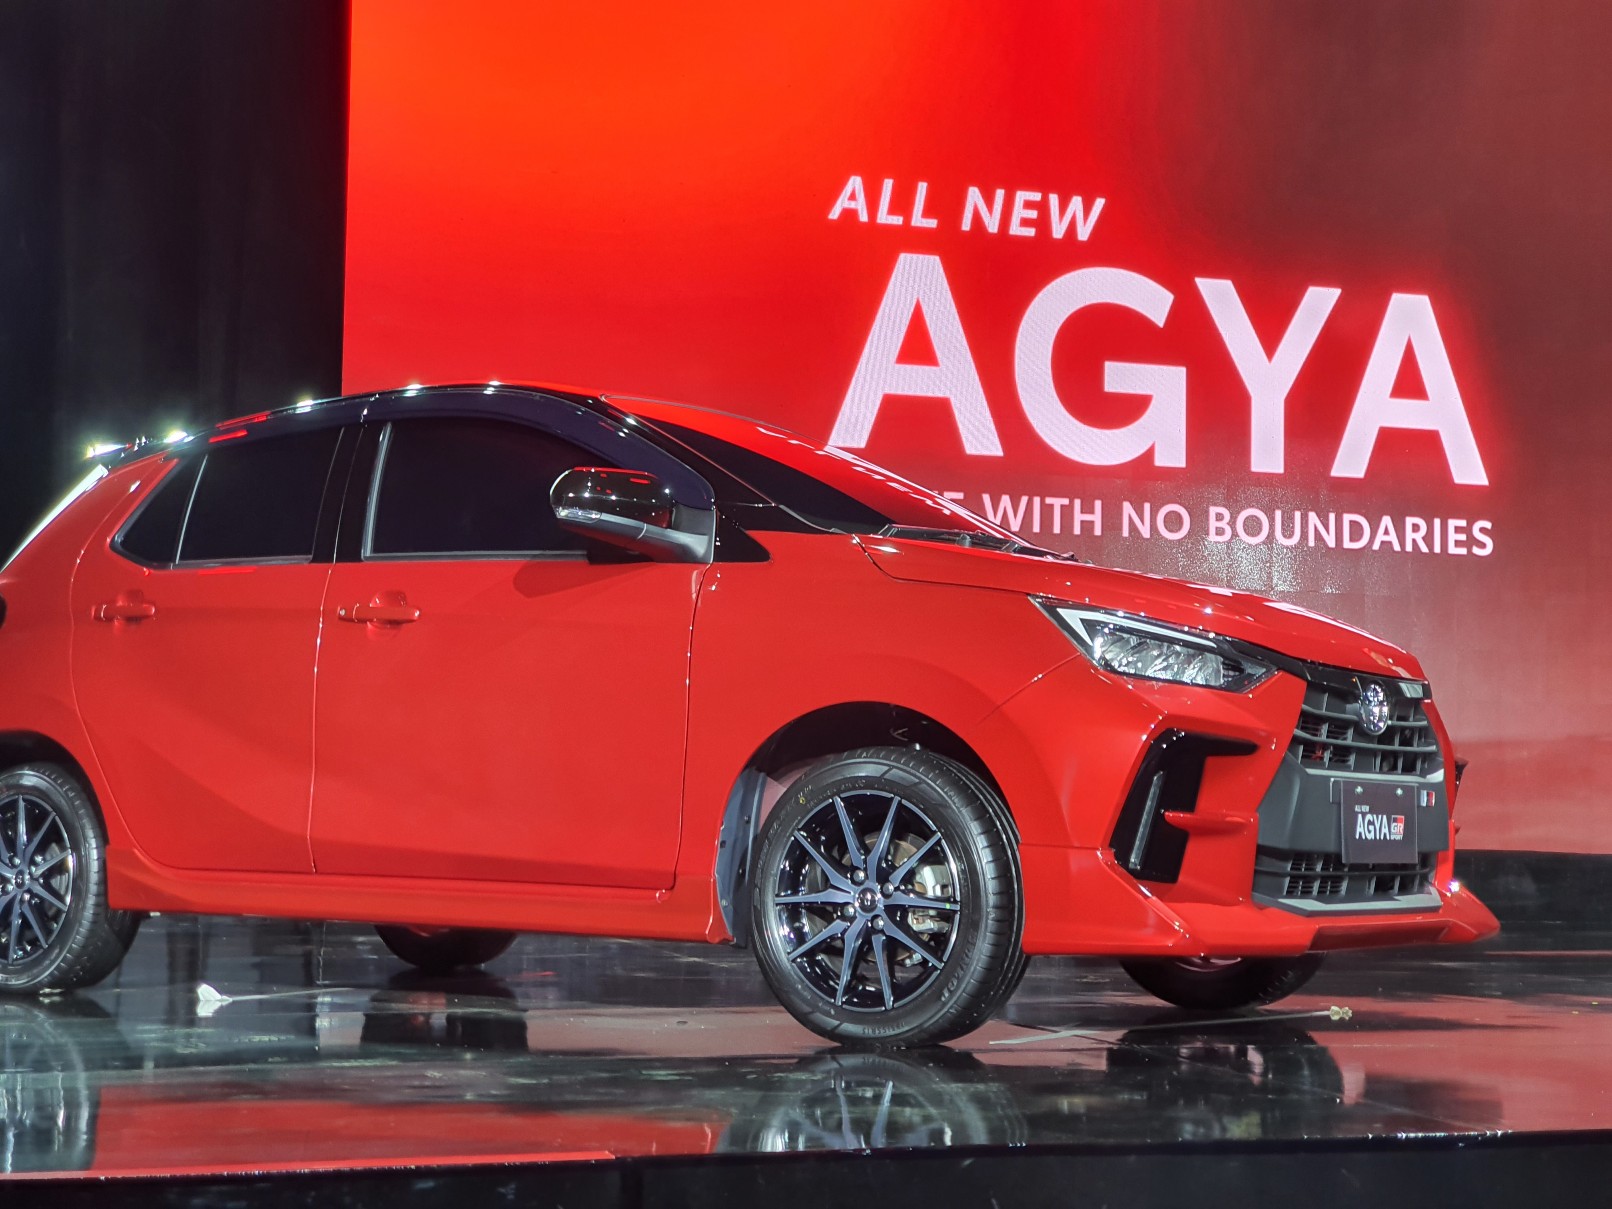 Toyota Pasti Kesal Brio jadi Mobil Terlaris, Balas Dendam Lewat Agya Baru!